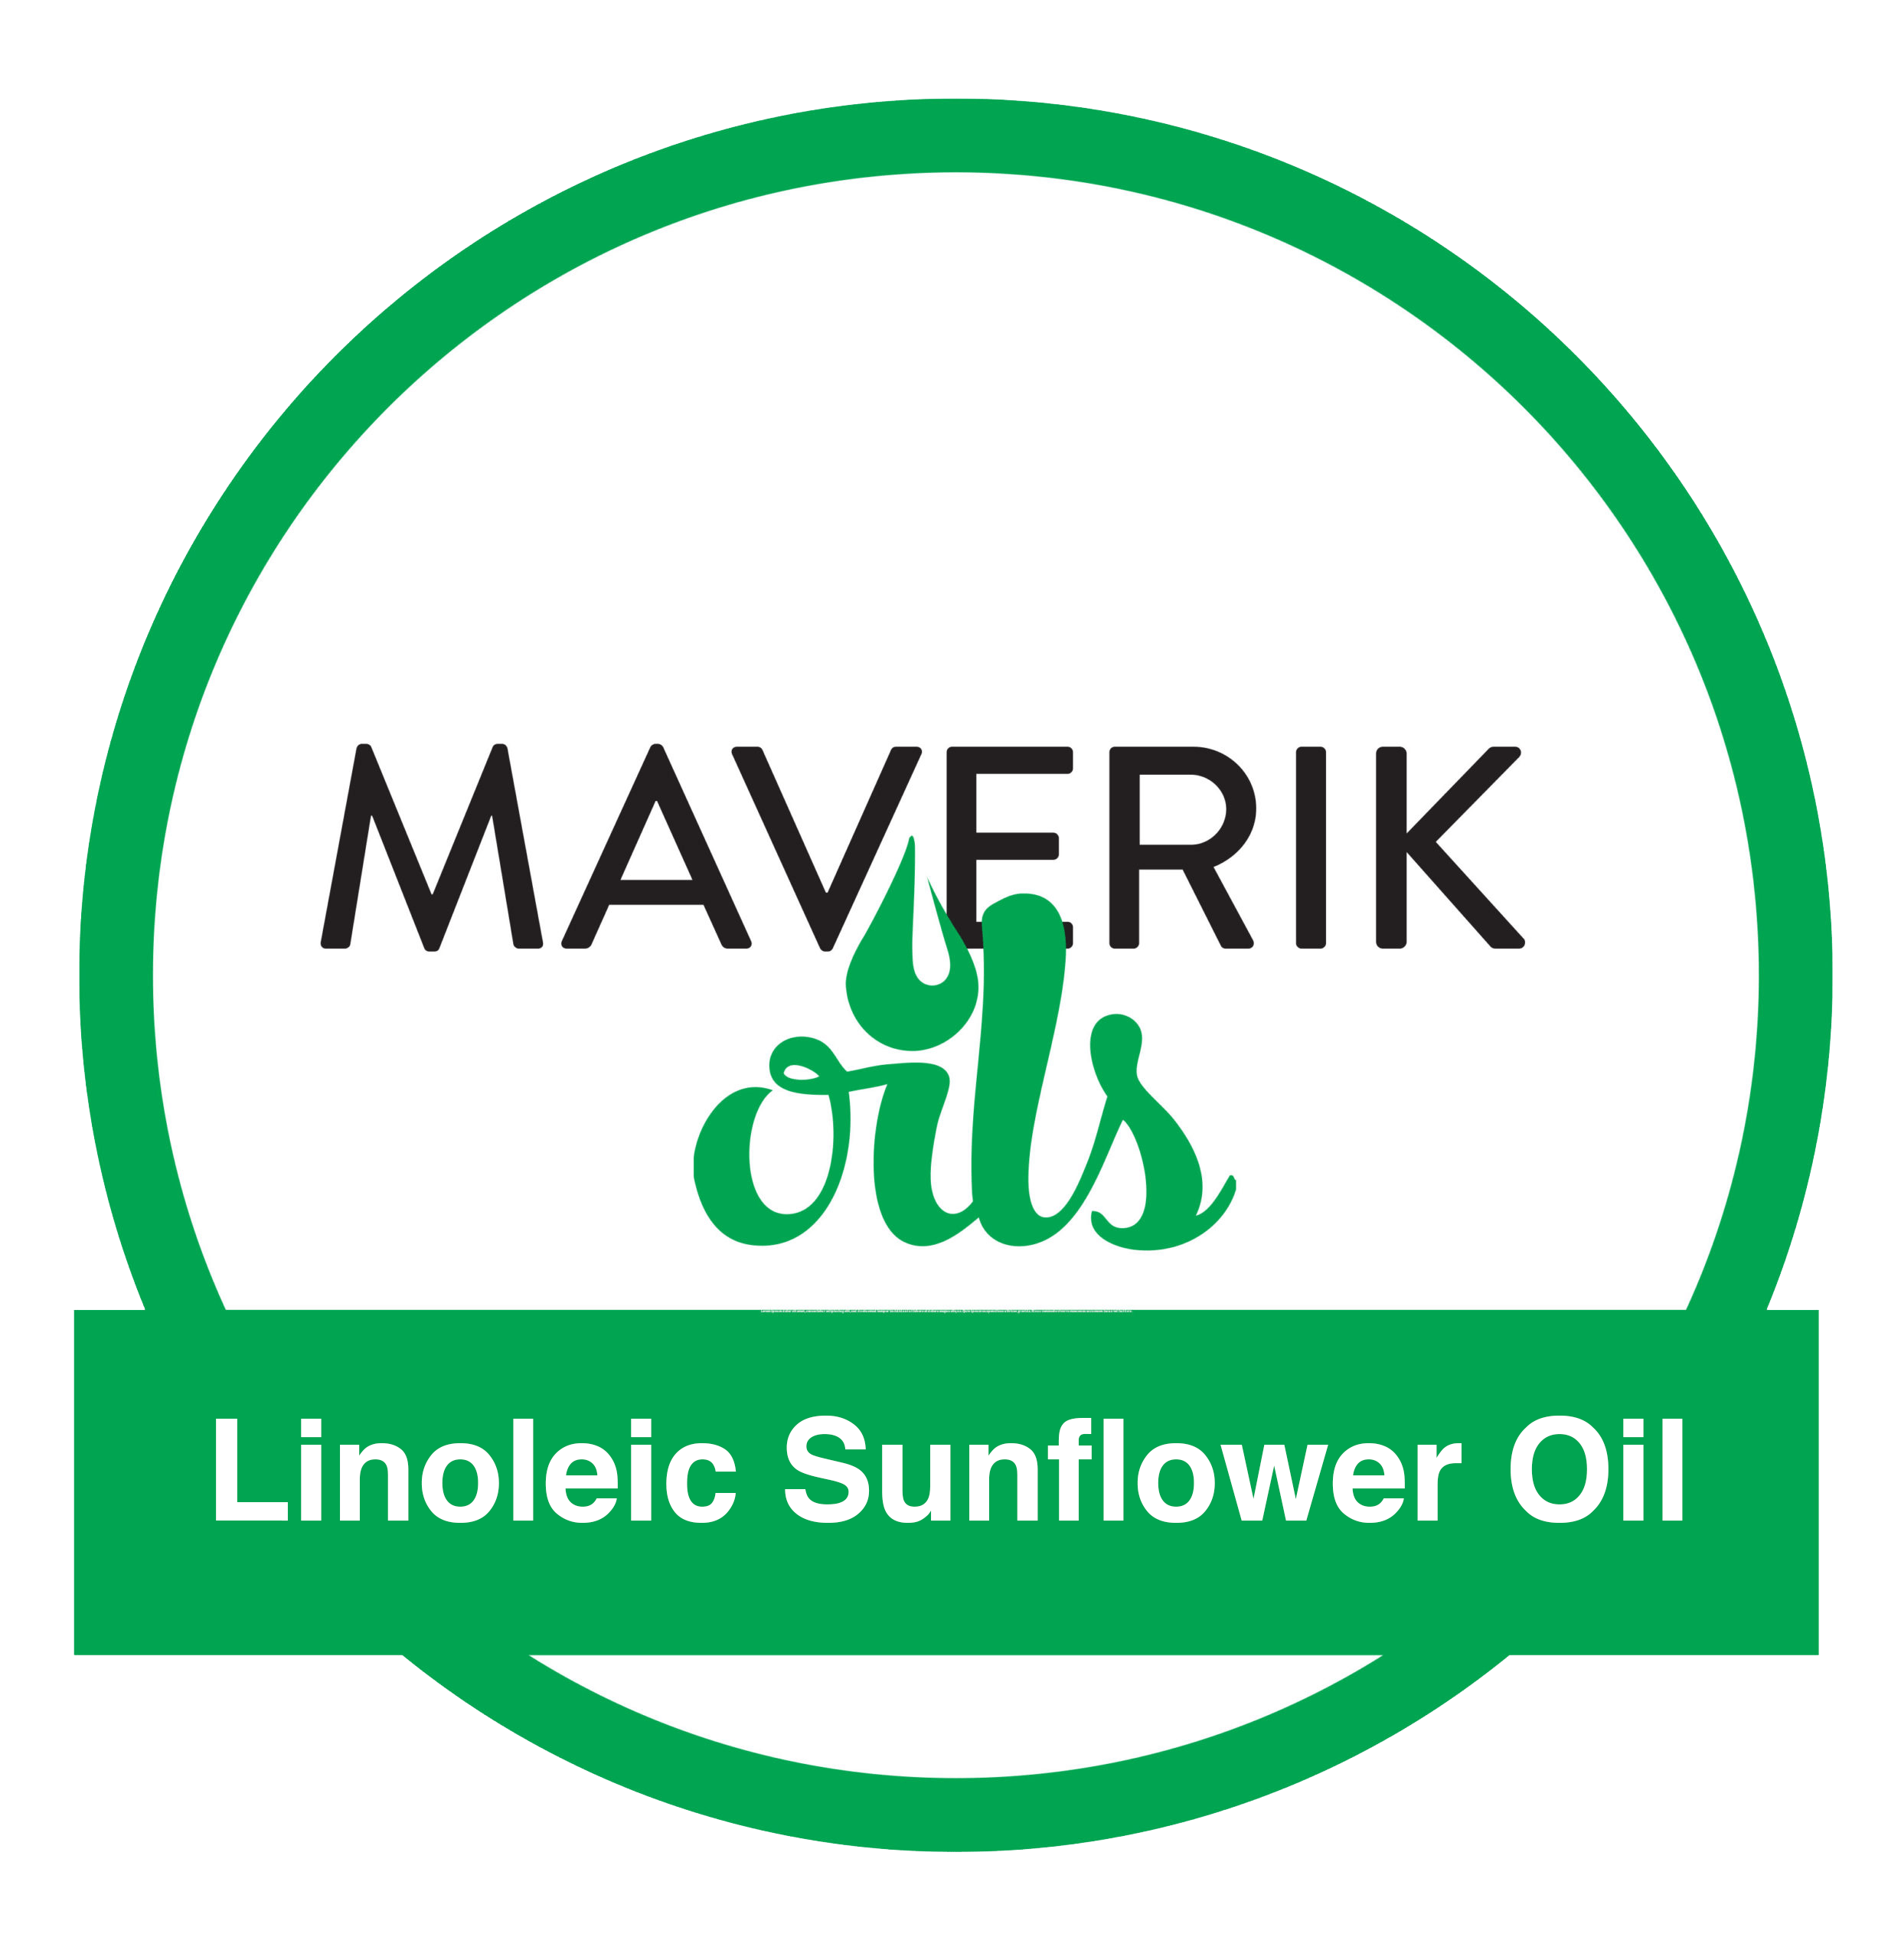 Linoleic Sunflower Oil